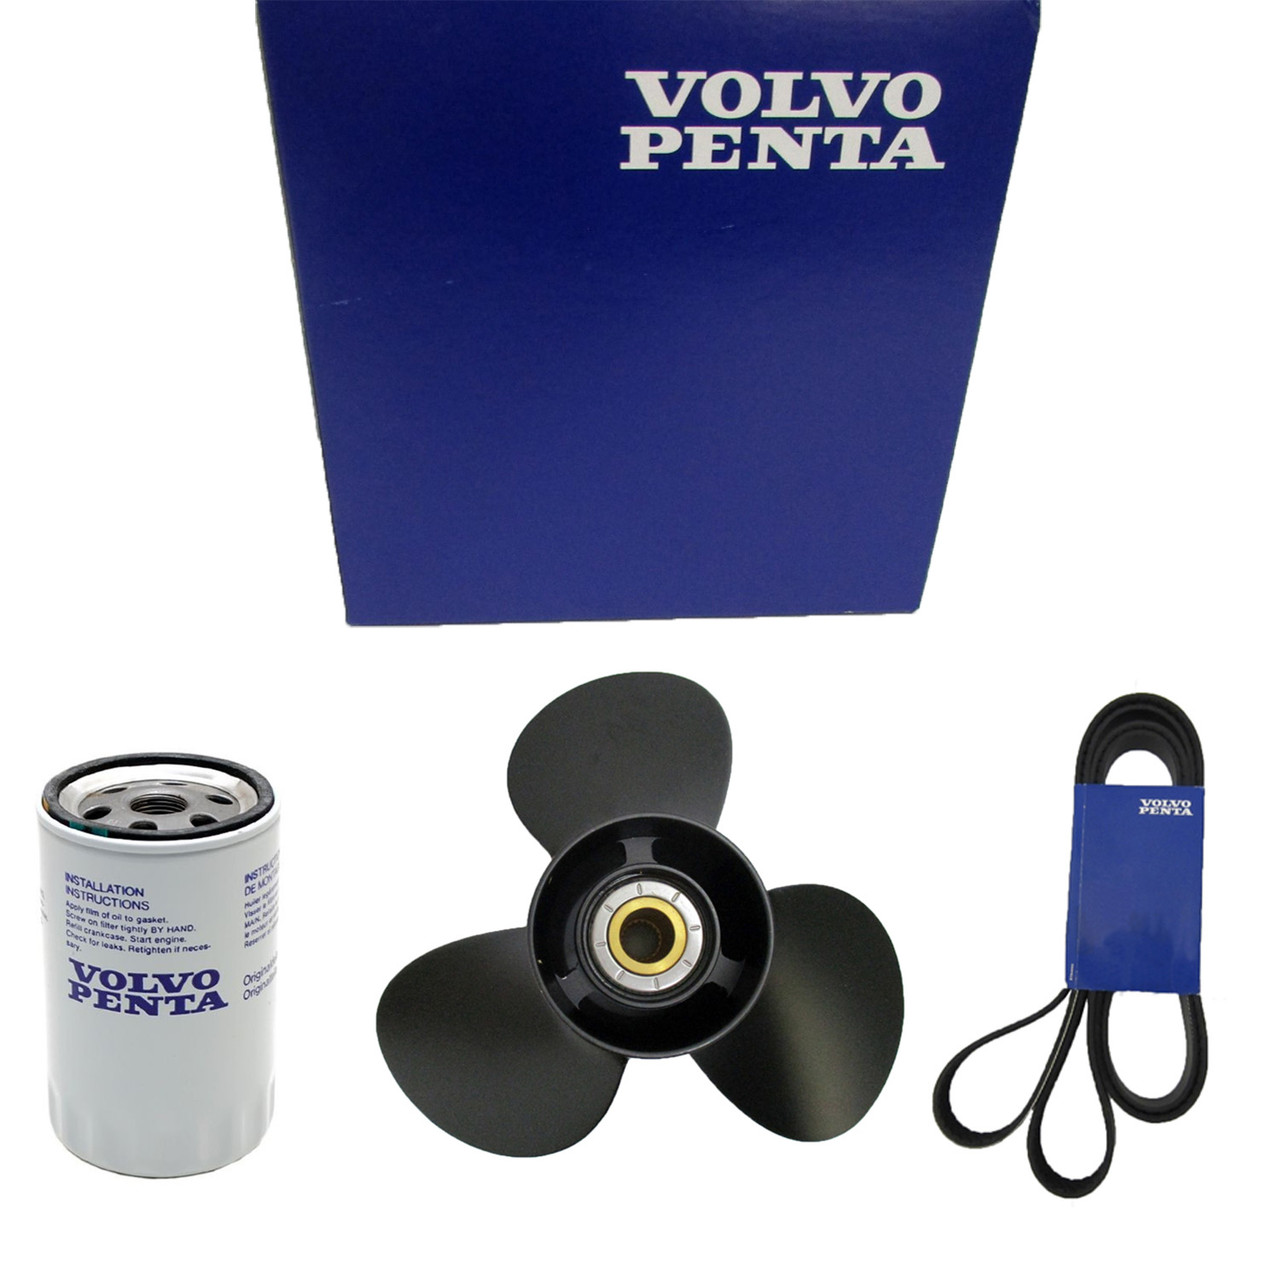 Volvo Penta New OEM Oil Filter, 23658092